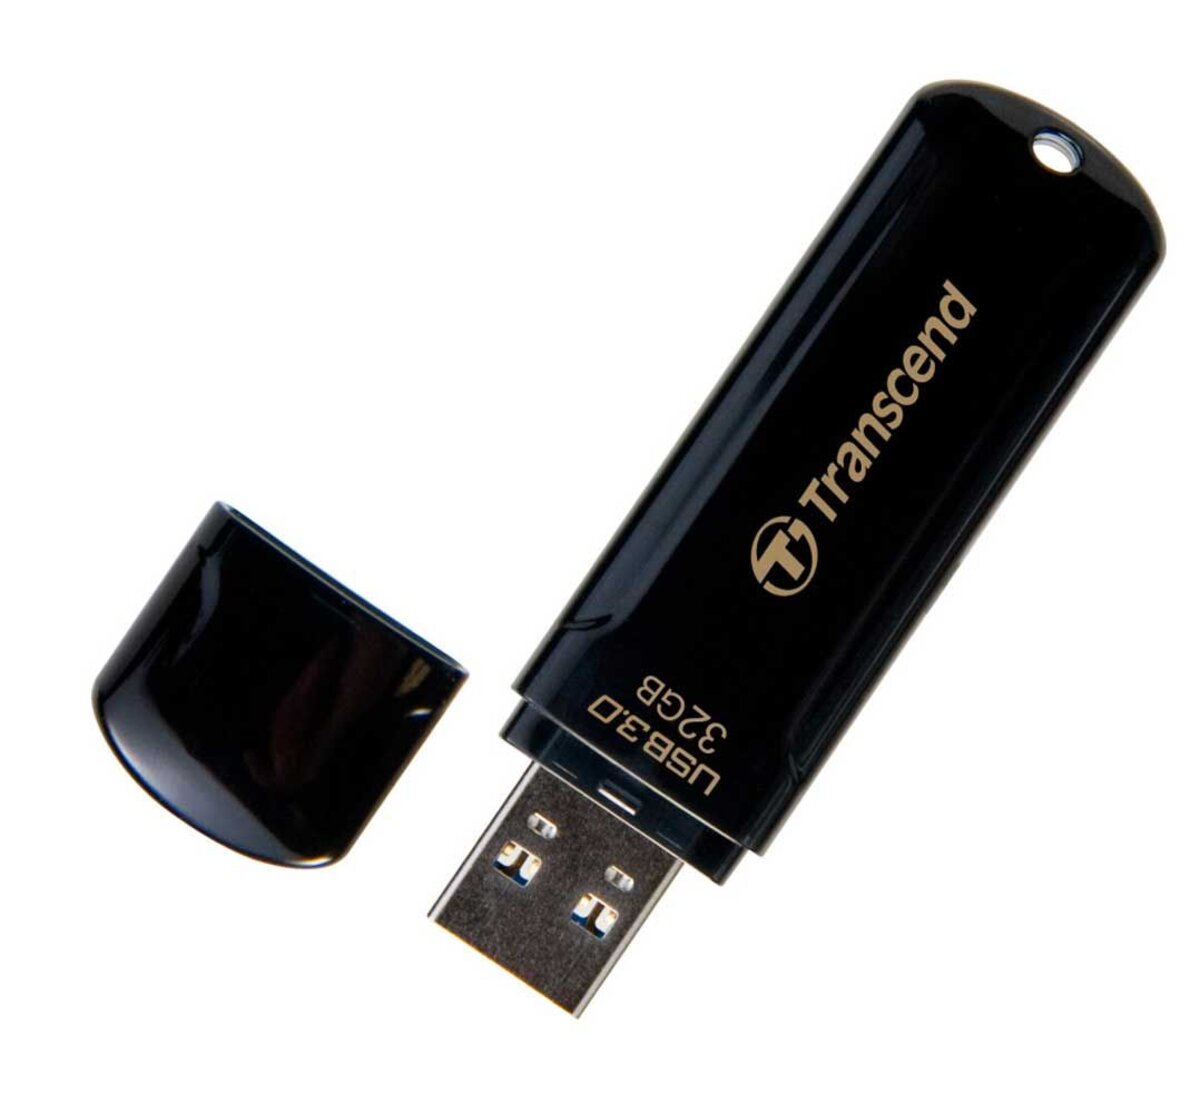 INTEGRAL - Clé USB - 32 Go - USB 3.0 - Noir - La Poste